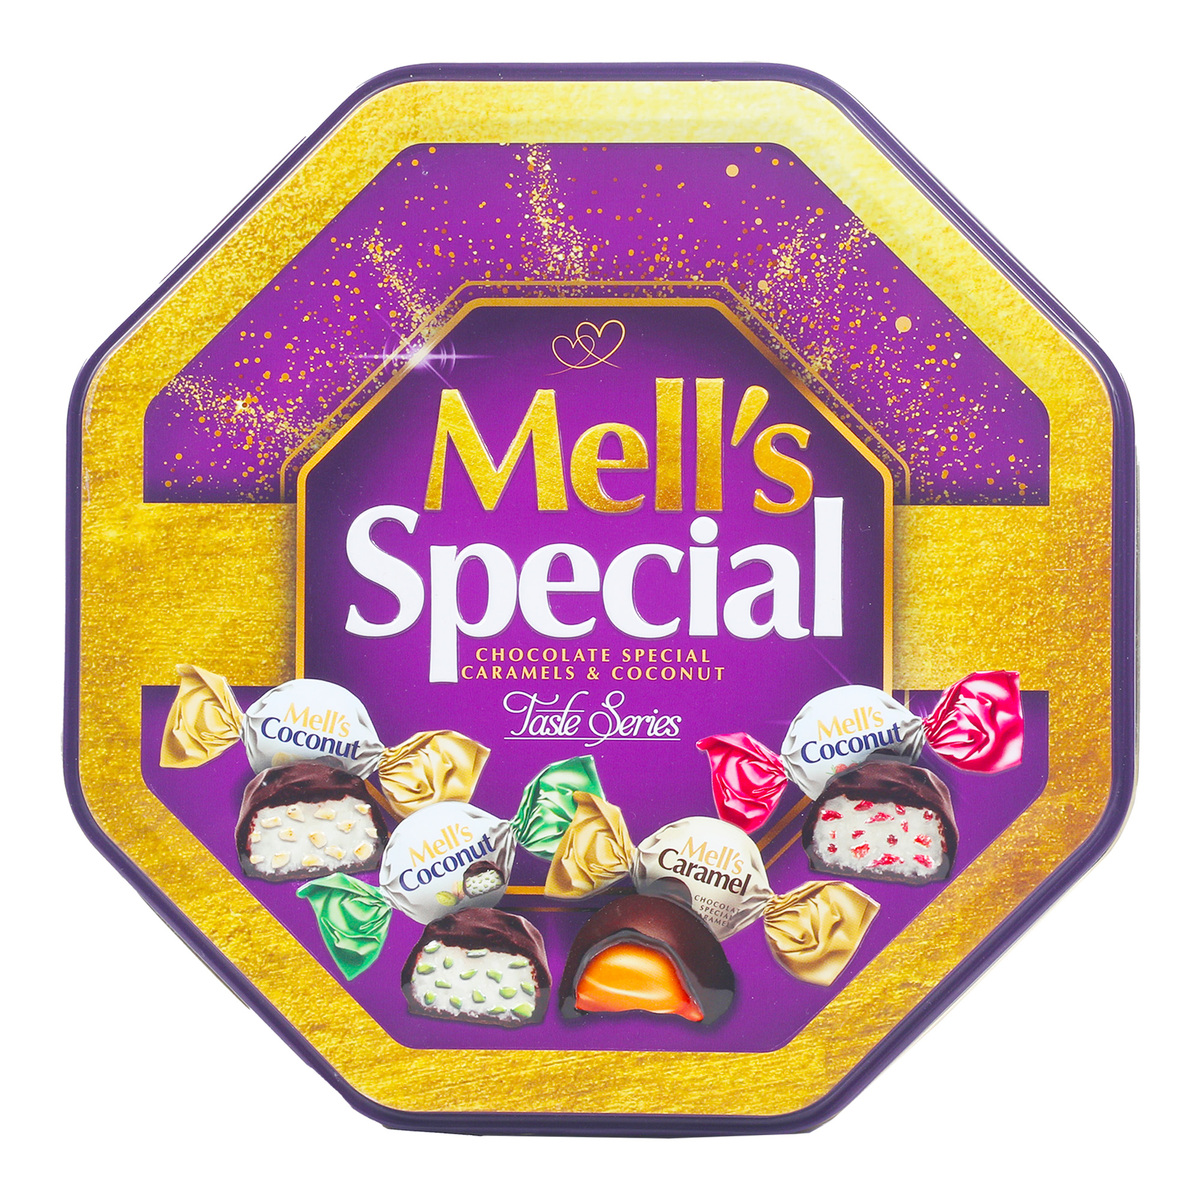 ميلز سبيشل علبة شوكولاتة بالكراميل وجوز الهند 500 جم